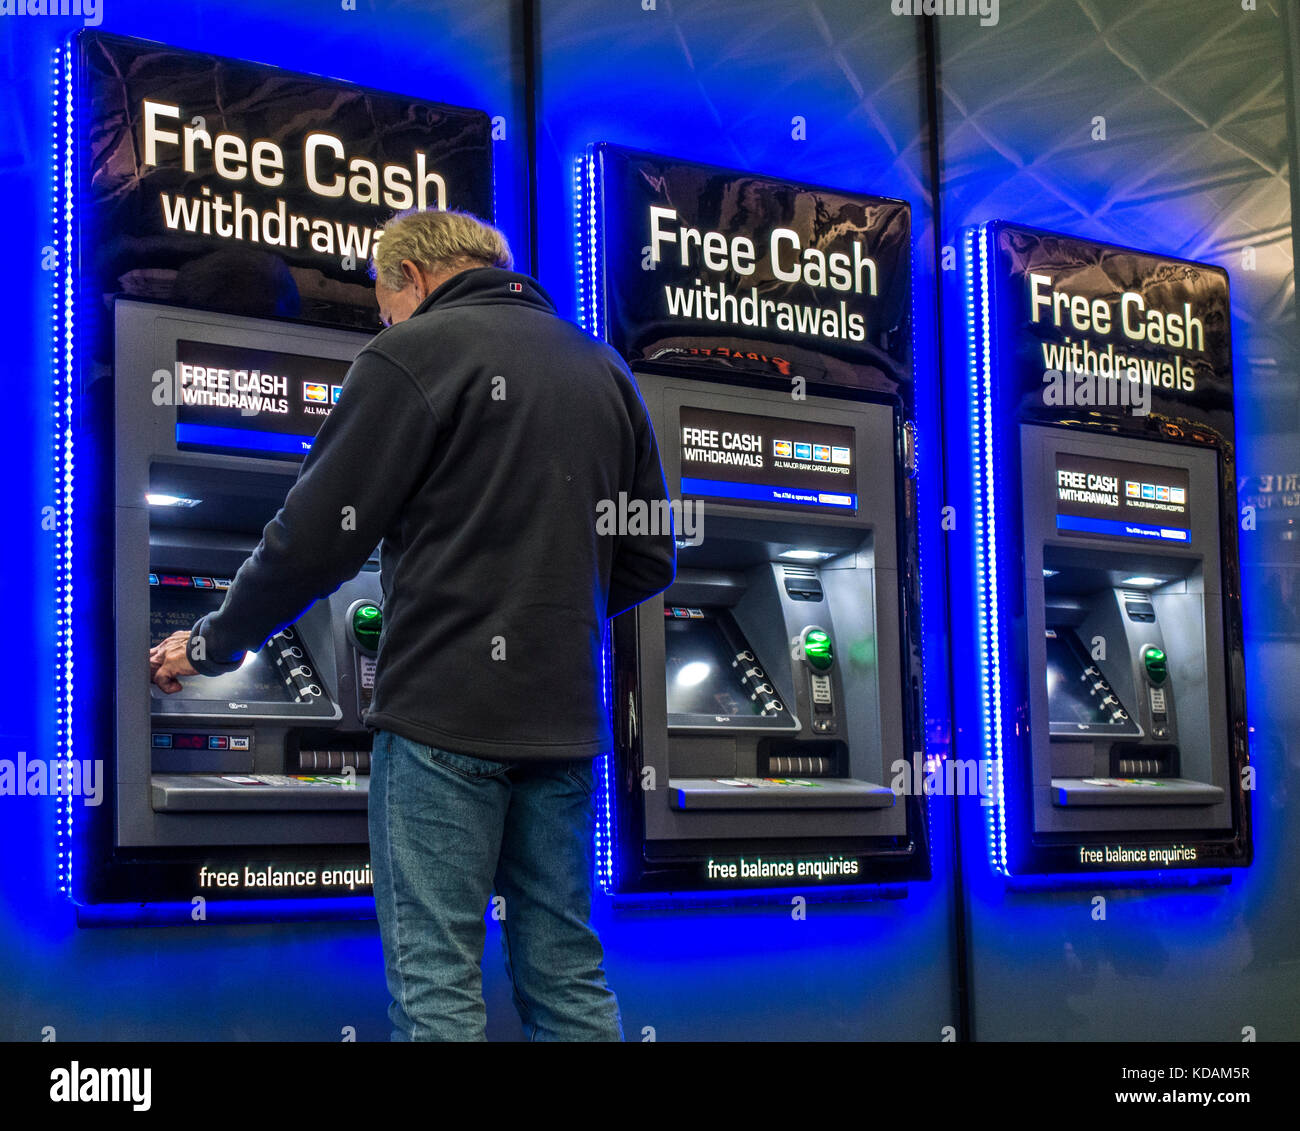 Man making cash machine / / Distributeur Distributeur automatique de retrait à une rangée de trois machines, avec l'éclairage d'un bleu éclatant. La gare de Kings Cross, Londres, Angleterre, Royaume-Uni. Banque D'Images